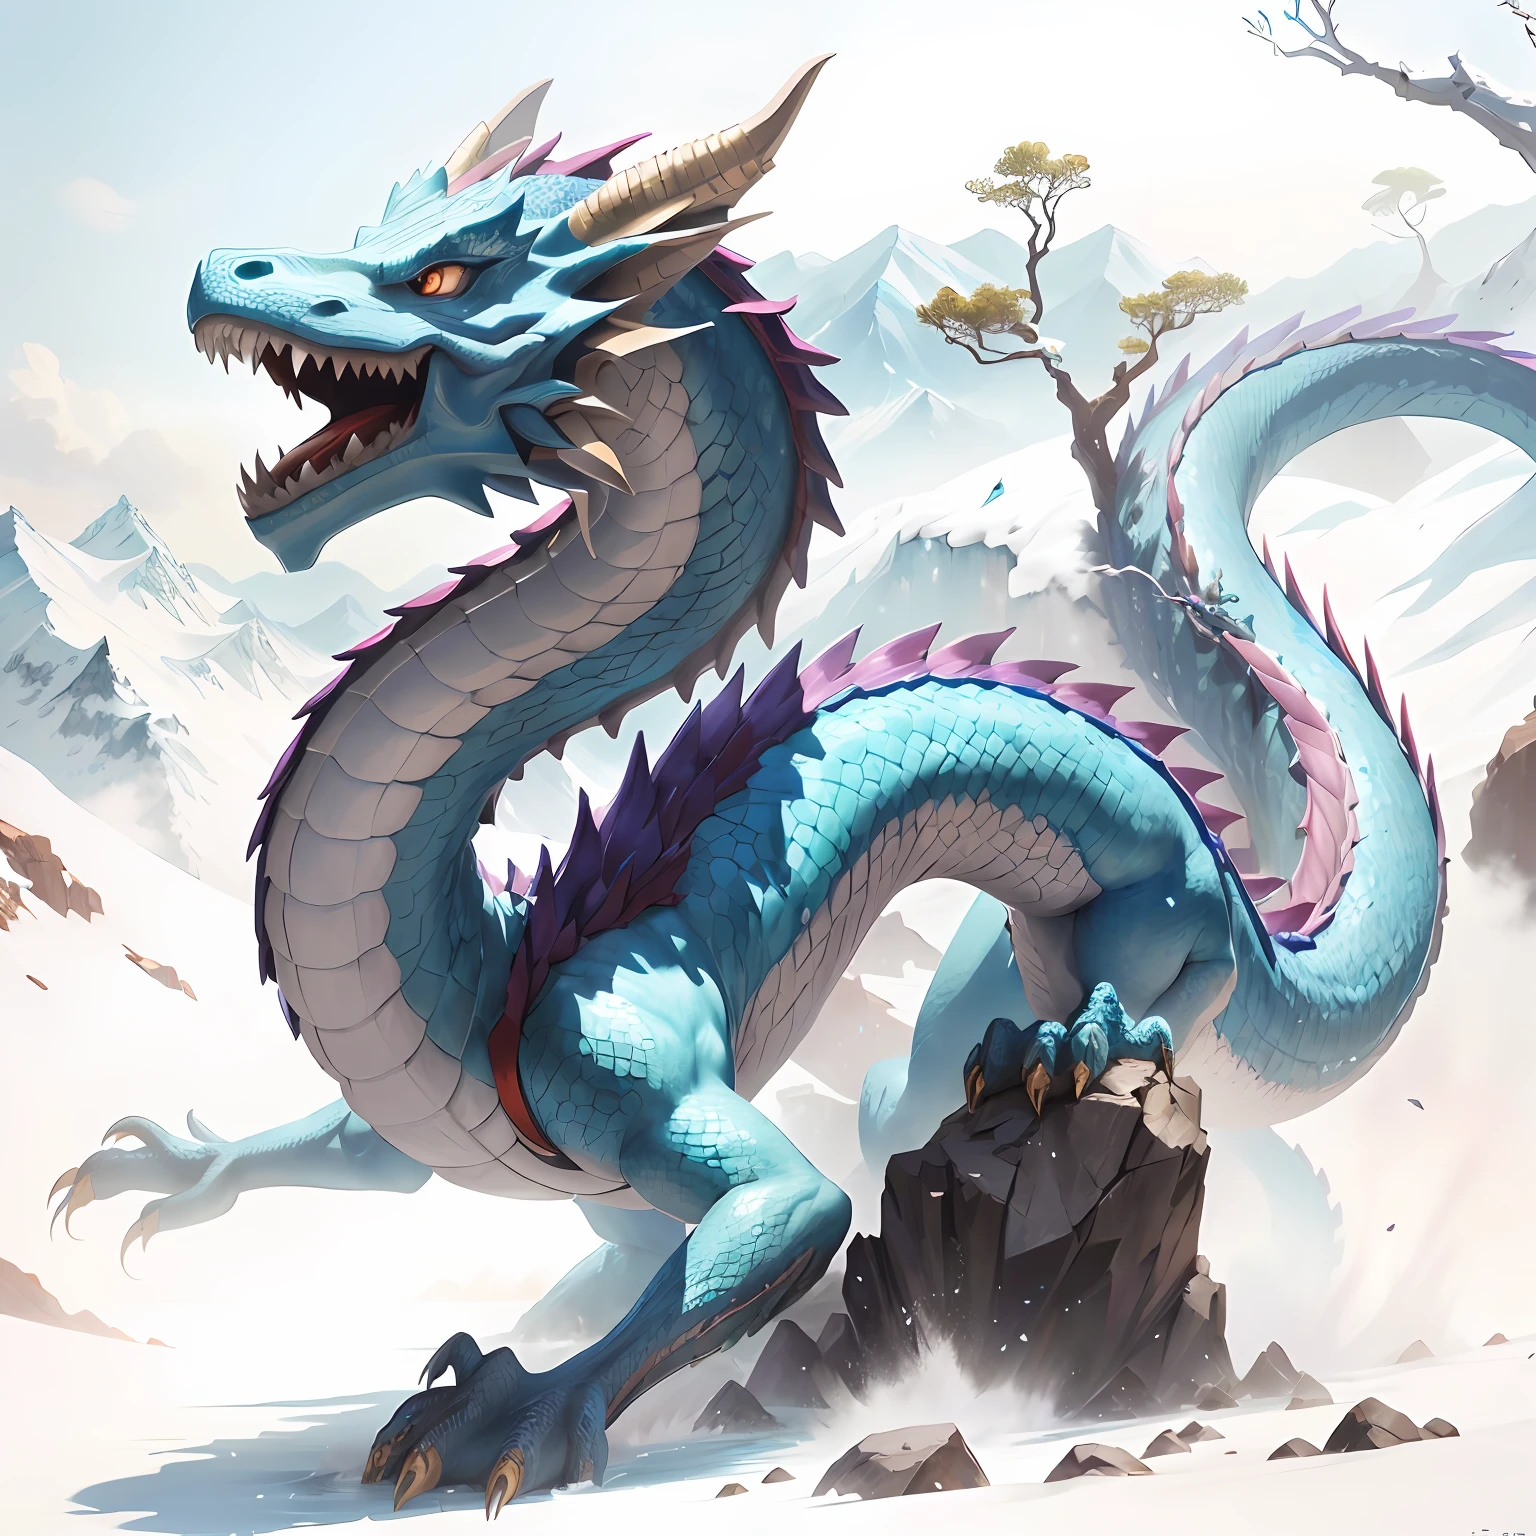 На камне стоит синий дракон, голубой китайский дракон фэнтези, синий дракон, Frost Дragon, Концепт-арт китайского дракона, синий чешуйчатый дракон, Дragon Art, Legendary Дragon, Д&комиссия по искусству дракона, гладкий китайский дракон, Дragon, эпический дракон, Водный Дракон, длинный дракон, oil painting из dragon, пил, Величественный，дракон， красочный， горные вершины， водопадер， Байюнь， tшедевр， Лучшее качество в лучшем случае， Это очень подробно， детально детализированный， изfcial art， Обои Unity 8k， 4k，8К，UHД， очень подробный， bразмытиеry， размытиеry_Фон， размытиеry_передний план，глубина_из_поле，движение_размытие，（реалистично，фотореалистичный：1），Золотой дракон，синие весы， --авто